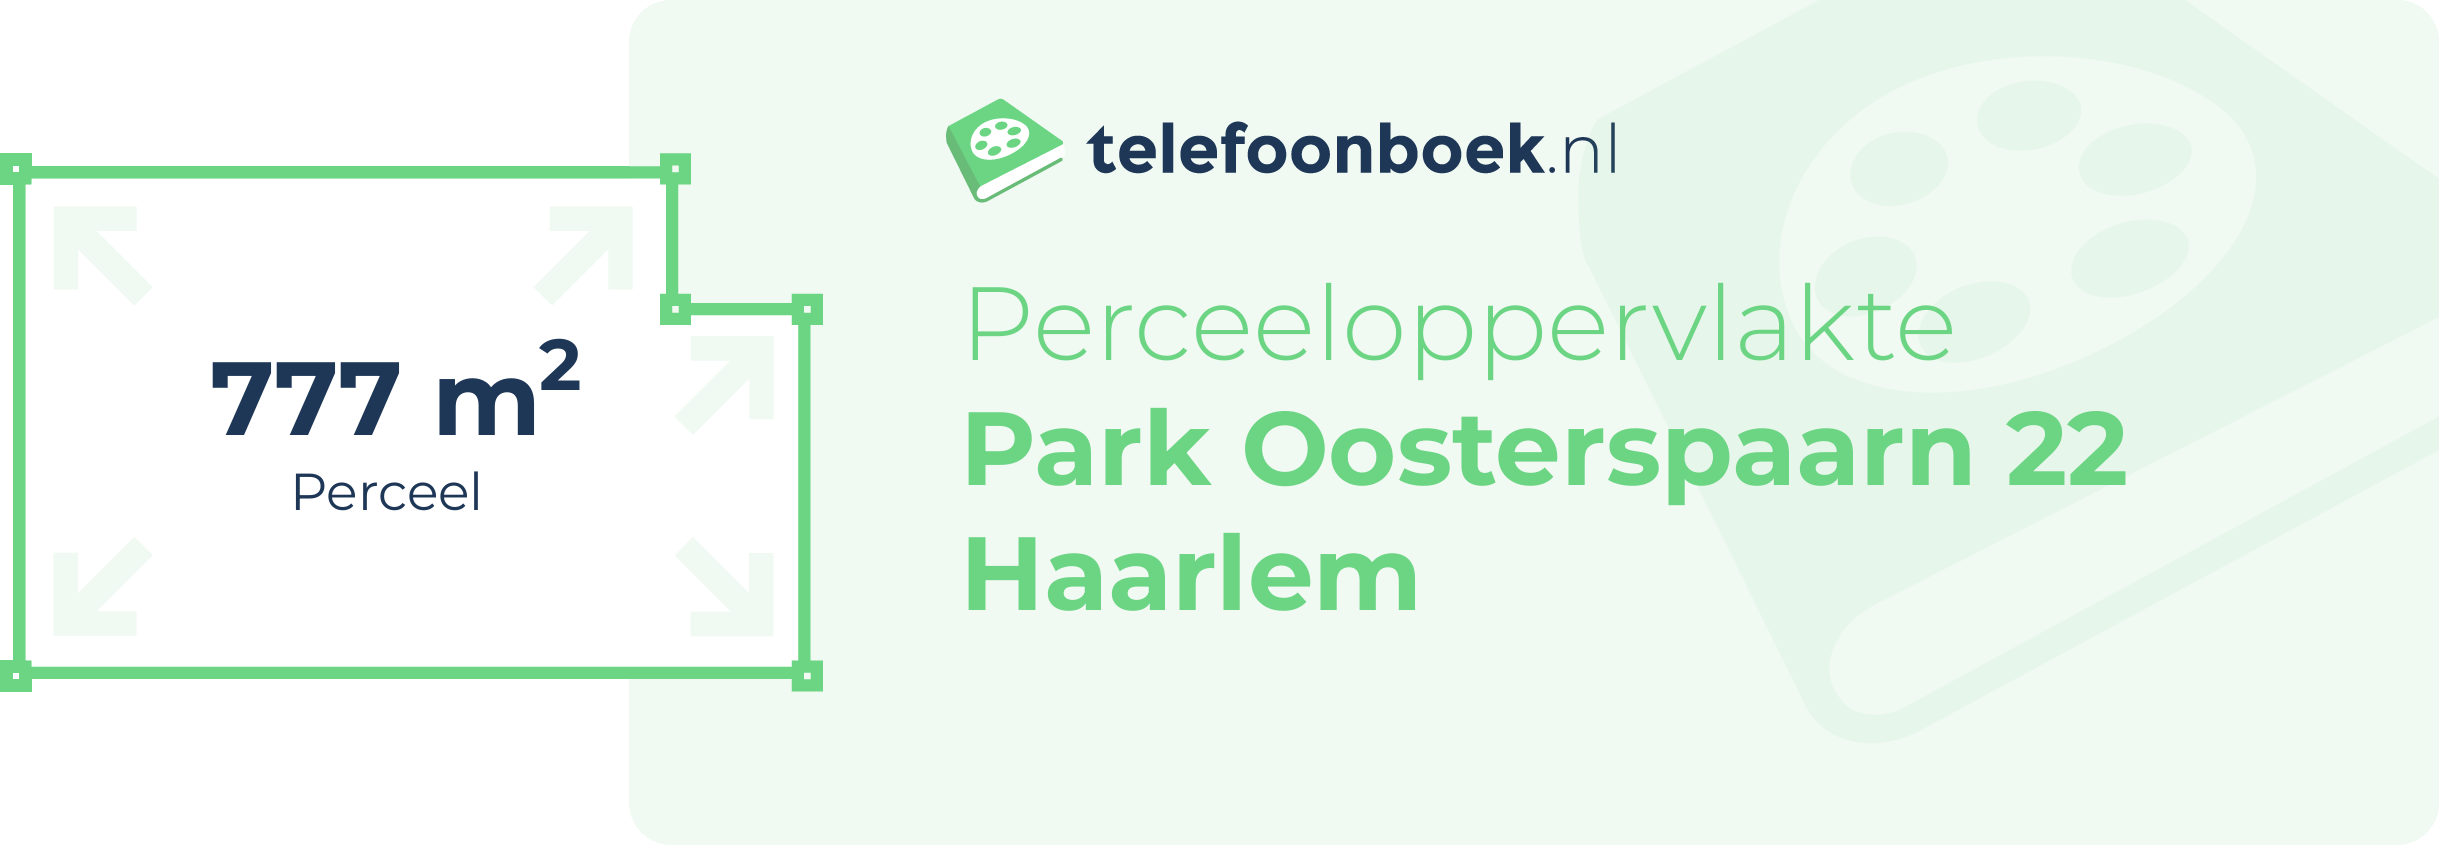 Perceeloppervlakte Park Oosterspaarn 22 Haarlem